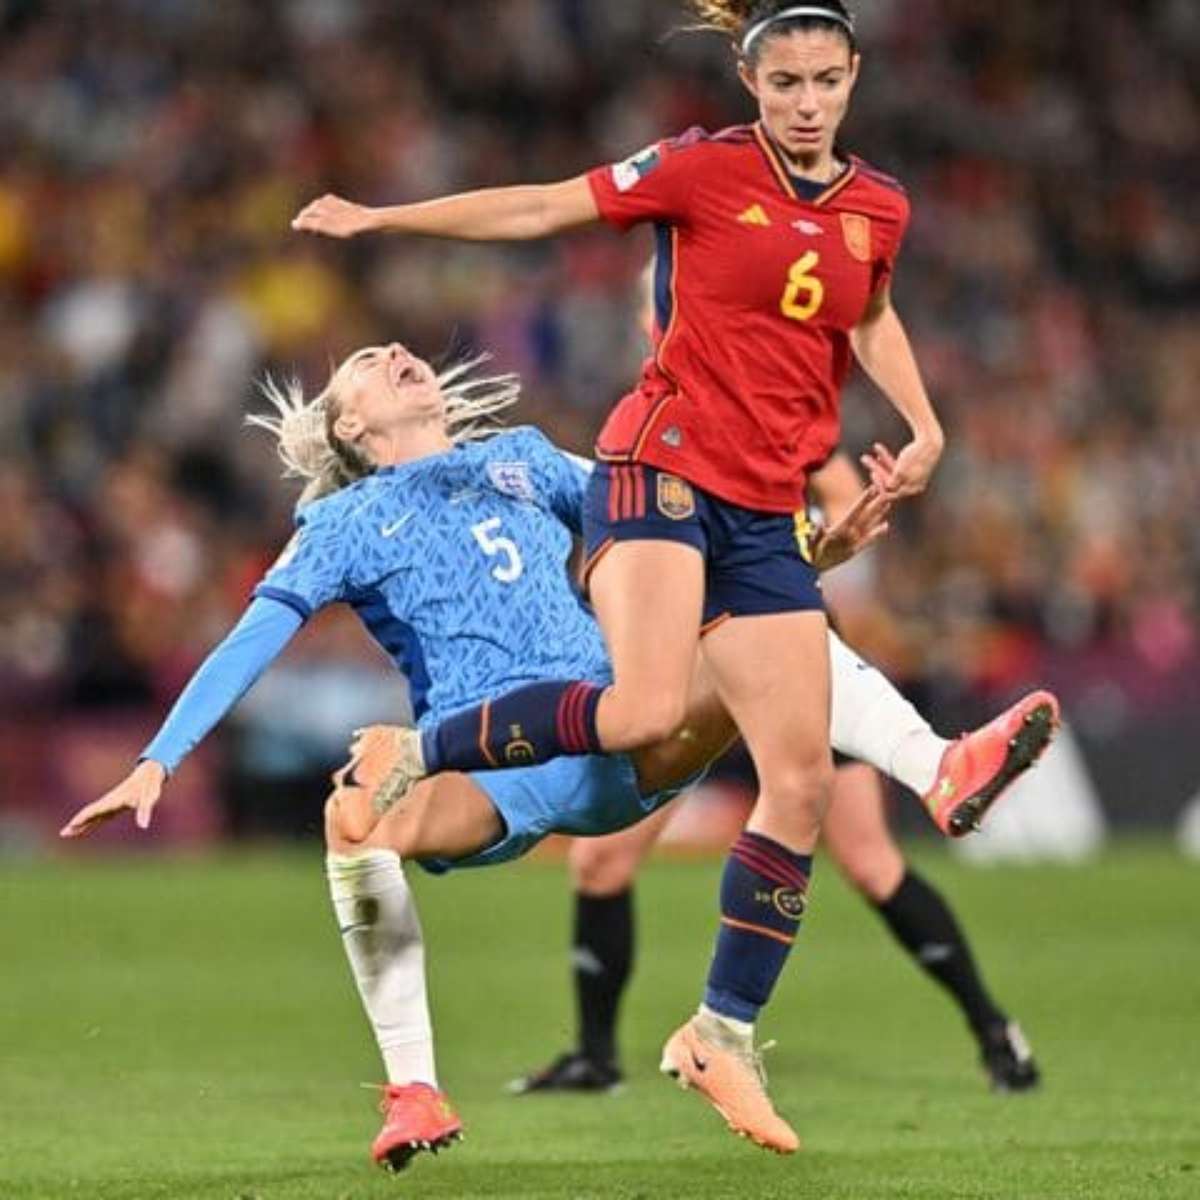 Espanha e Inglaterra estão na Final da Copa do Mundo Feminina 2023 - Mundo  Conectado